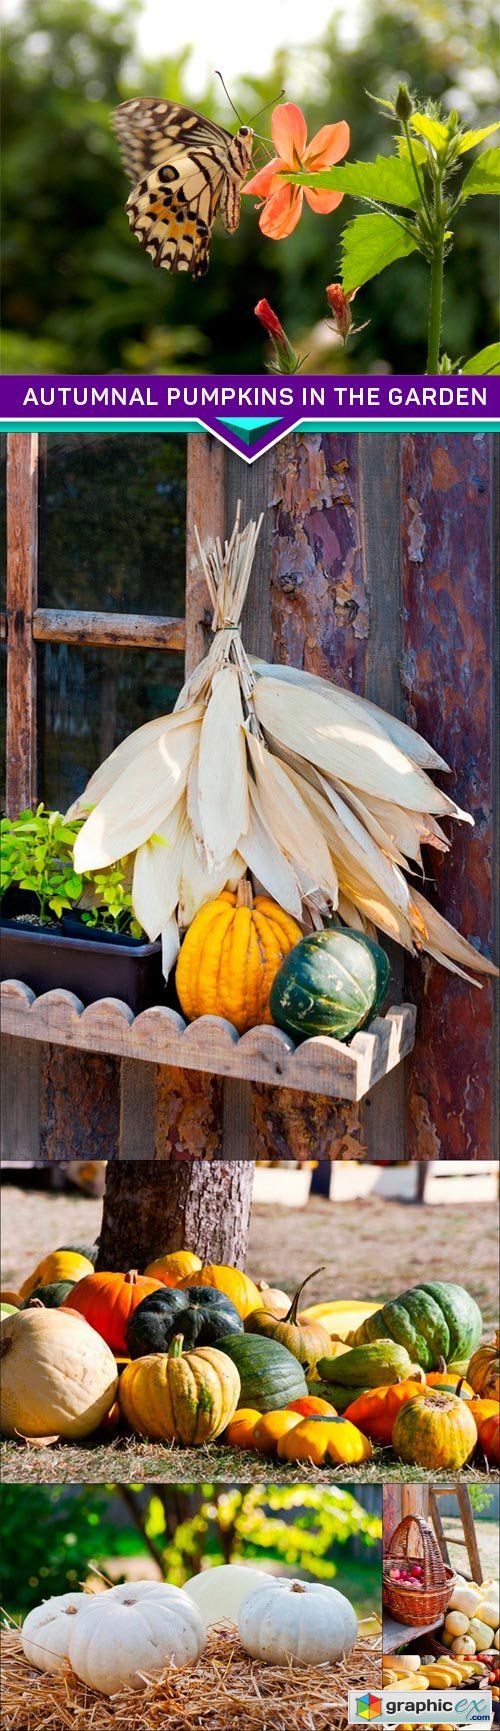 Autumnal pumpkins in the garden 6x JPEG